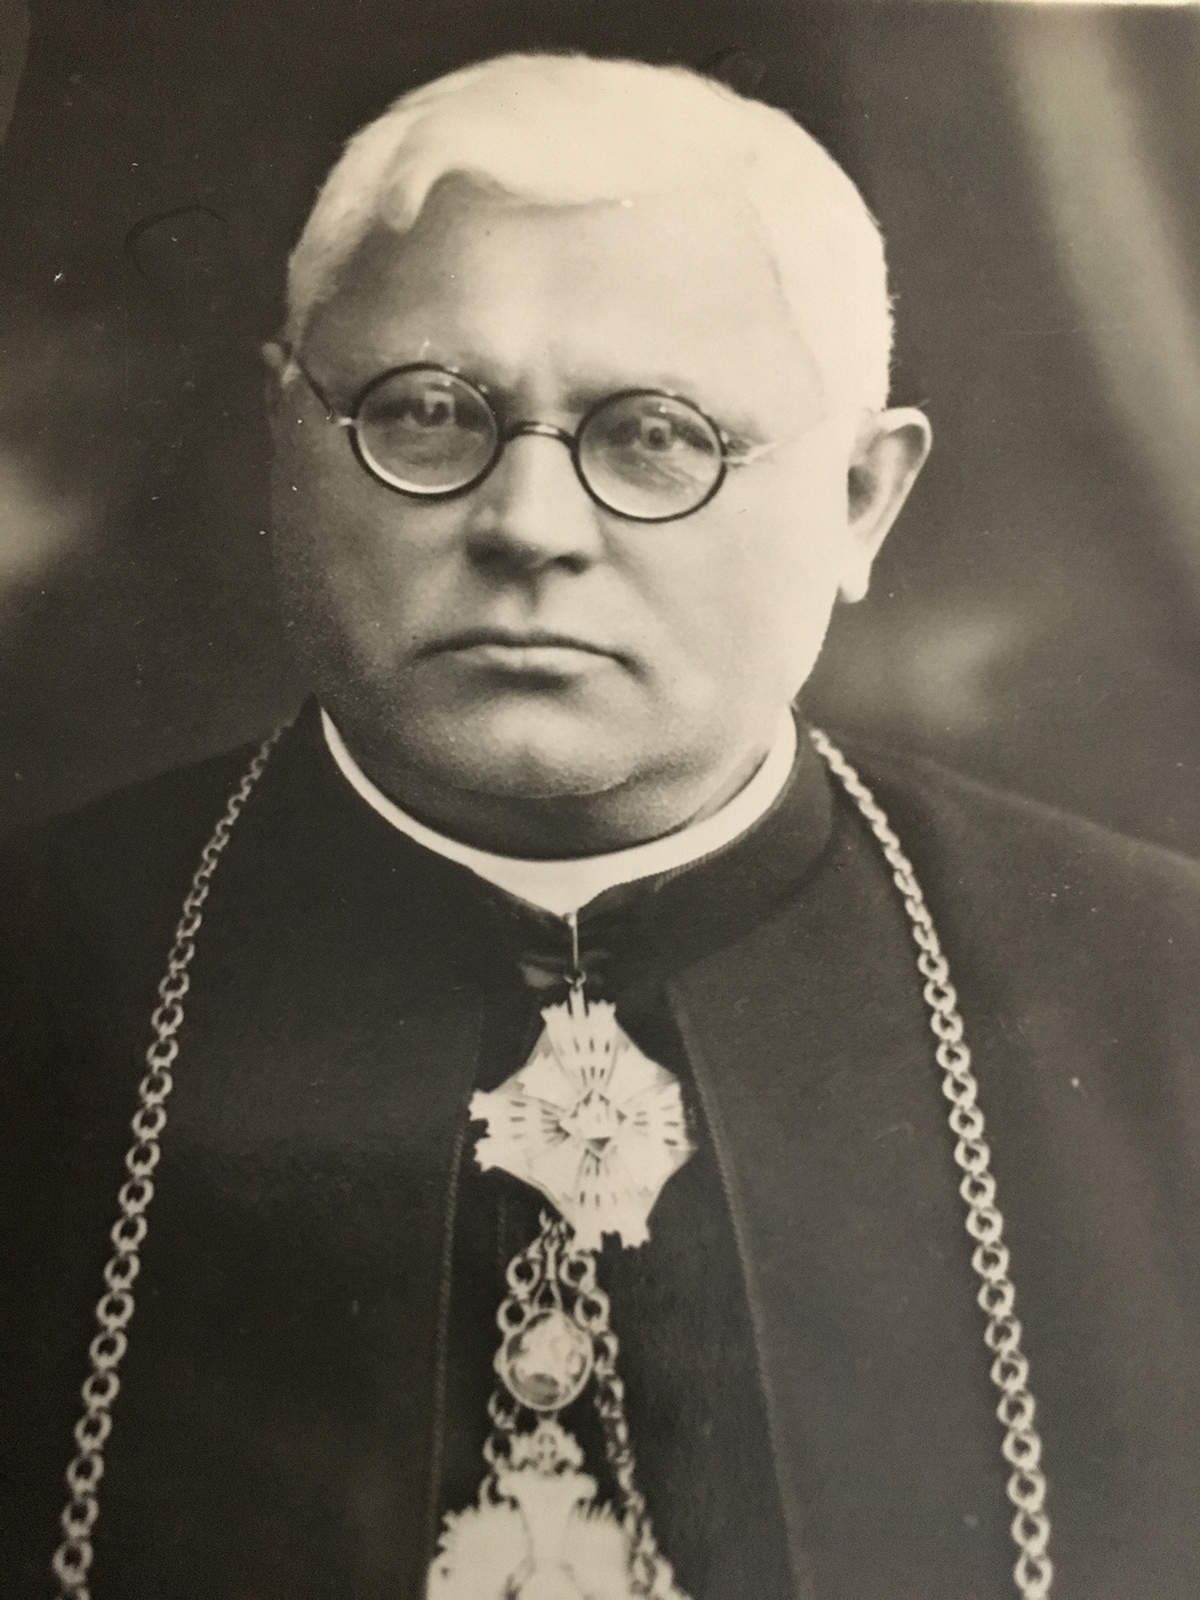 Rašytojas Juozas Tumas Vaižgantas pakrikštijęs Kazimiero Pakšto tėvą Adomą Pakštą.